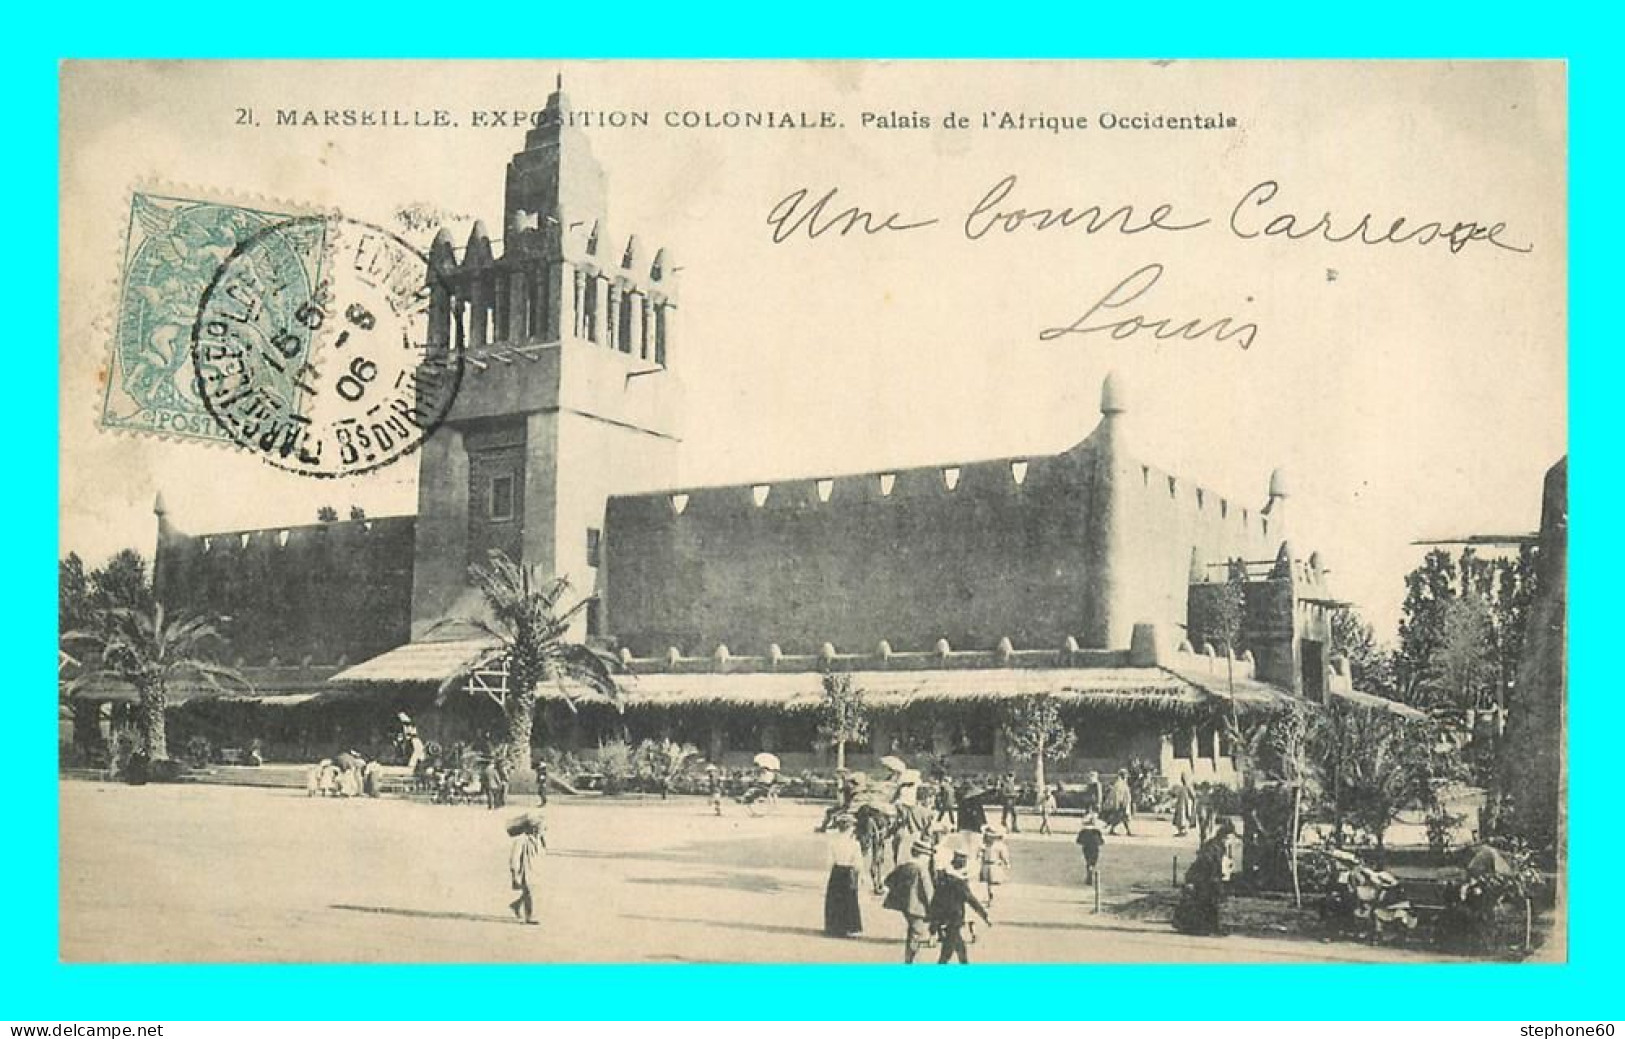 A868 / 447 13 - MARSEILLE Exposition Coloniale Palais De L'Afrique Occidentale - Colonial Exhibitions 1906 - 1922